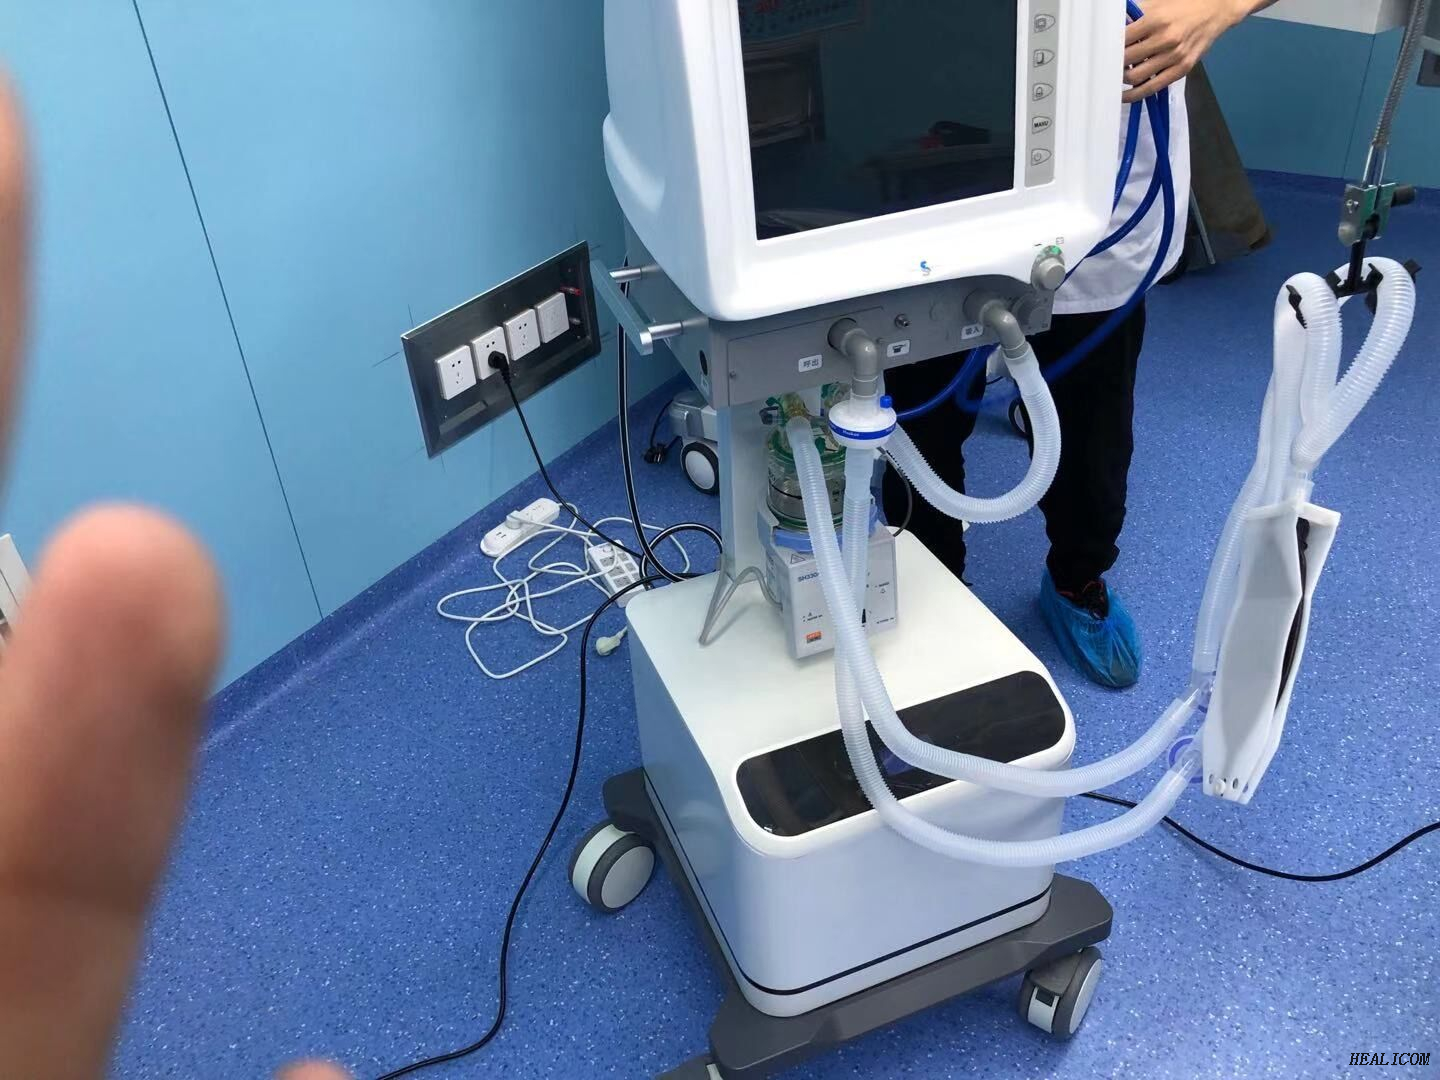 HS-1100 Macchina per la respirazione del carrello mobile per attrezzature mediche chirurgiche ospedaliere ICU Ventilatore per uso umano o infantile